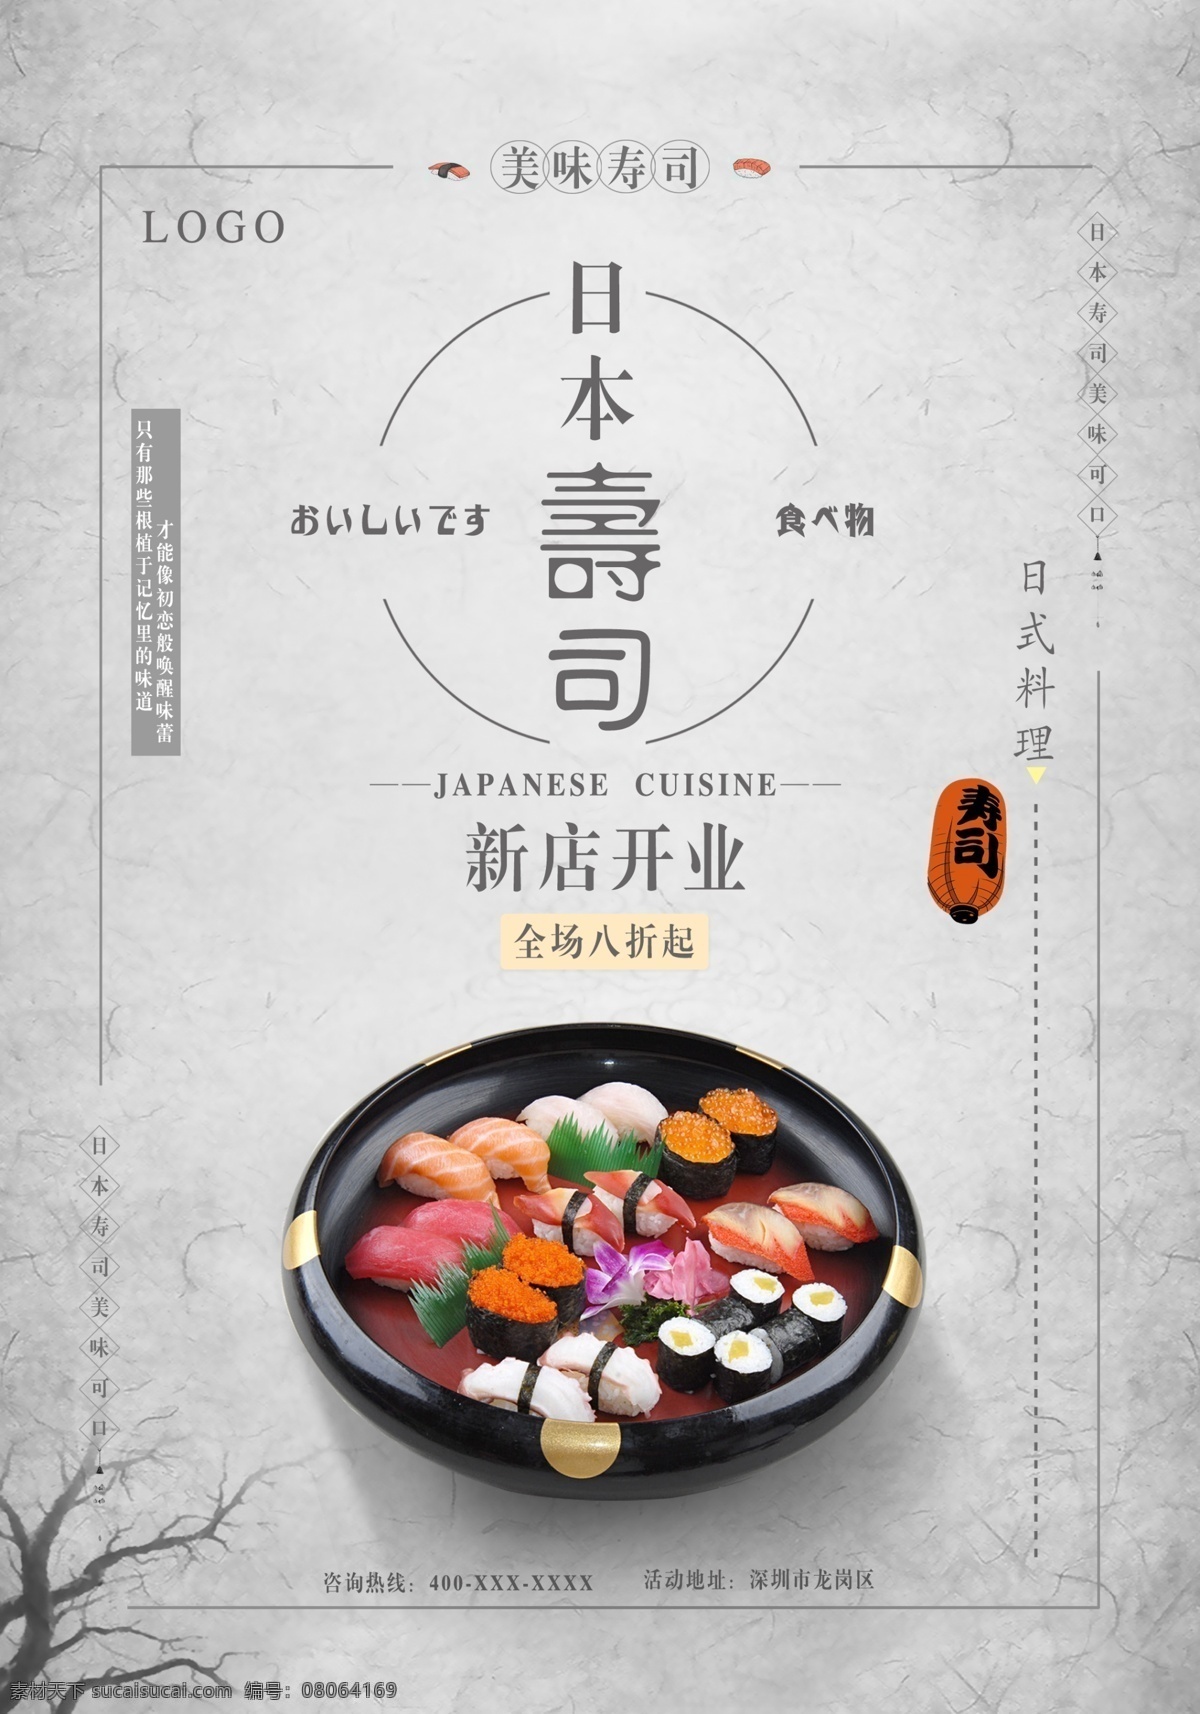 日式 寿司 新店 开业 海报 日式寿司 新店开业 促销海报 美食海报 美味寿司 美味